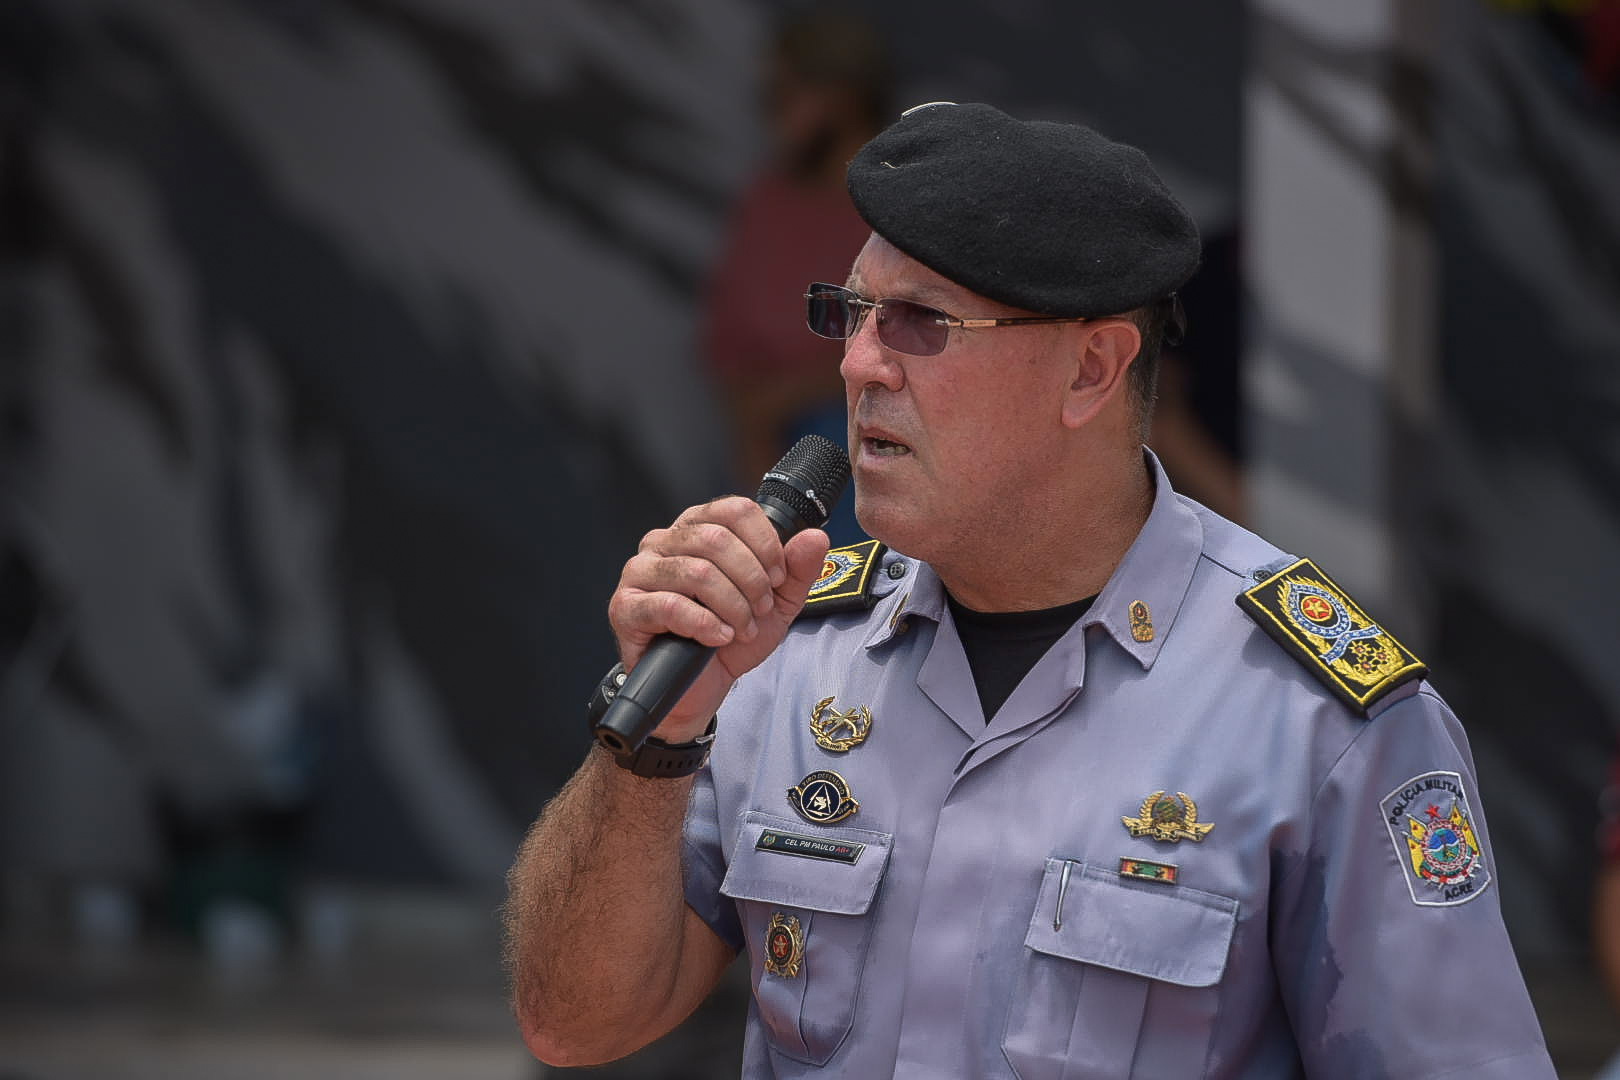 Comandante-geral da Polícia Militar também parabenizou os formados e condecorou com medalhas os três profissionais destaques da tropa. Foto: Diego Gurgel/Secom